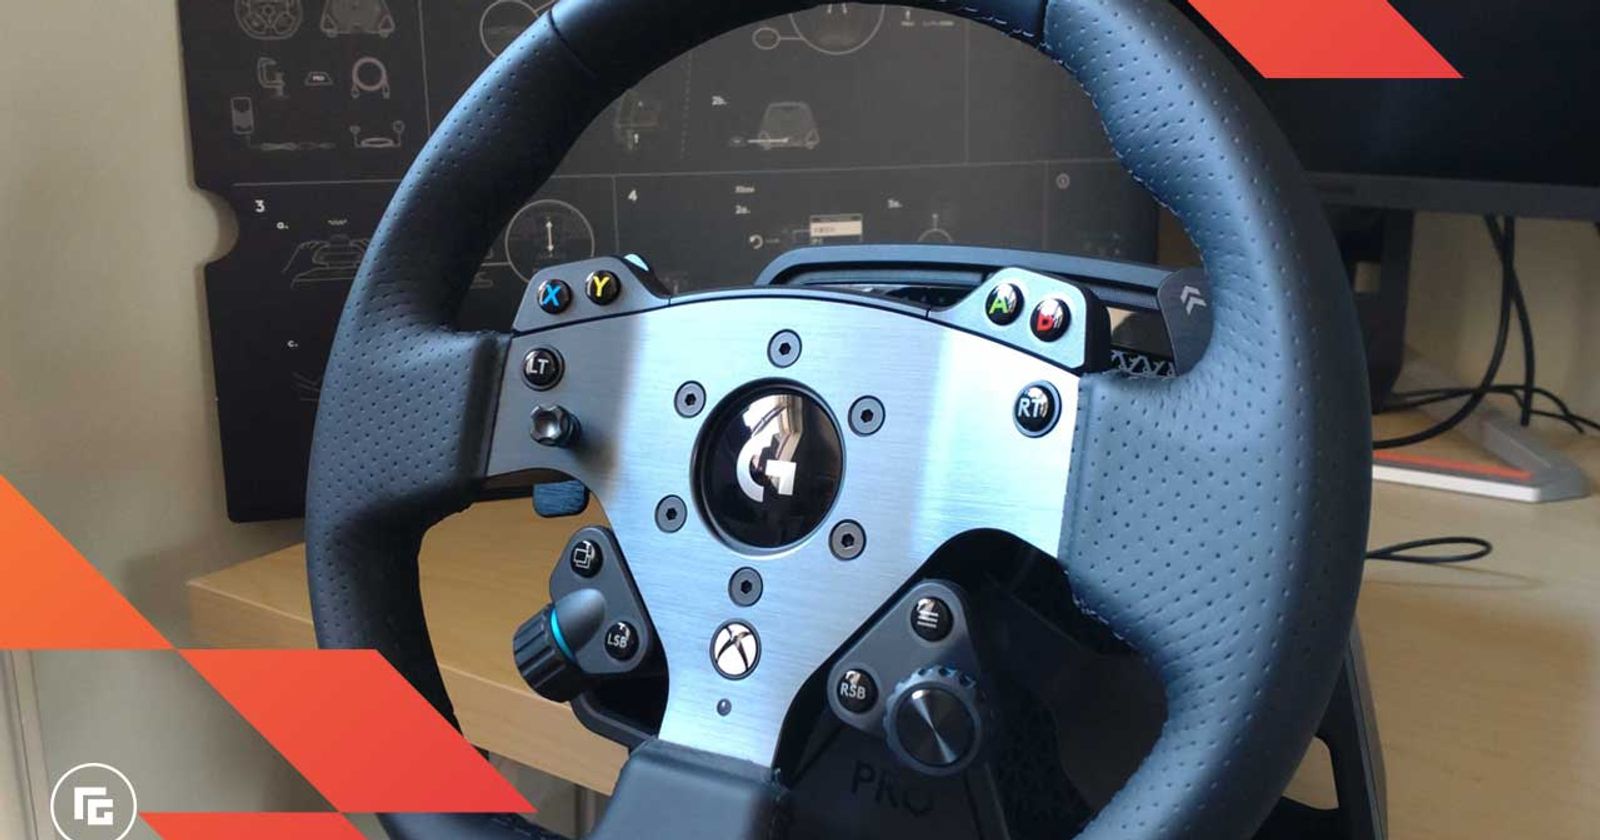 Logitech SWE Add-On GT Steering Wheel Rim - UK